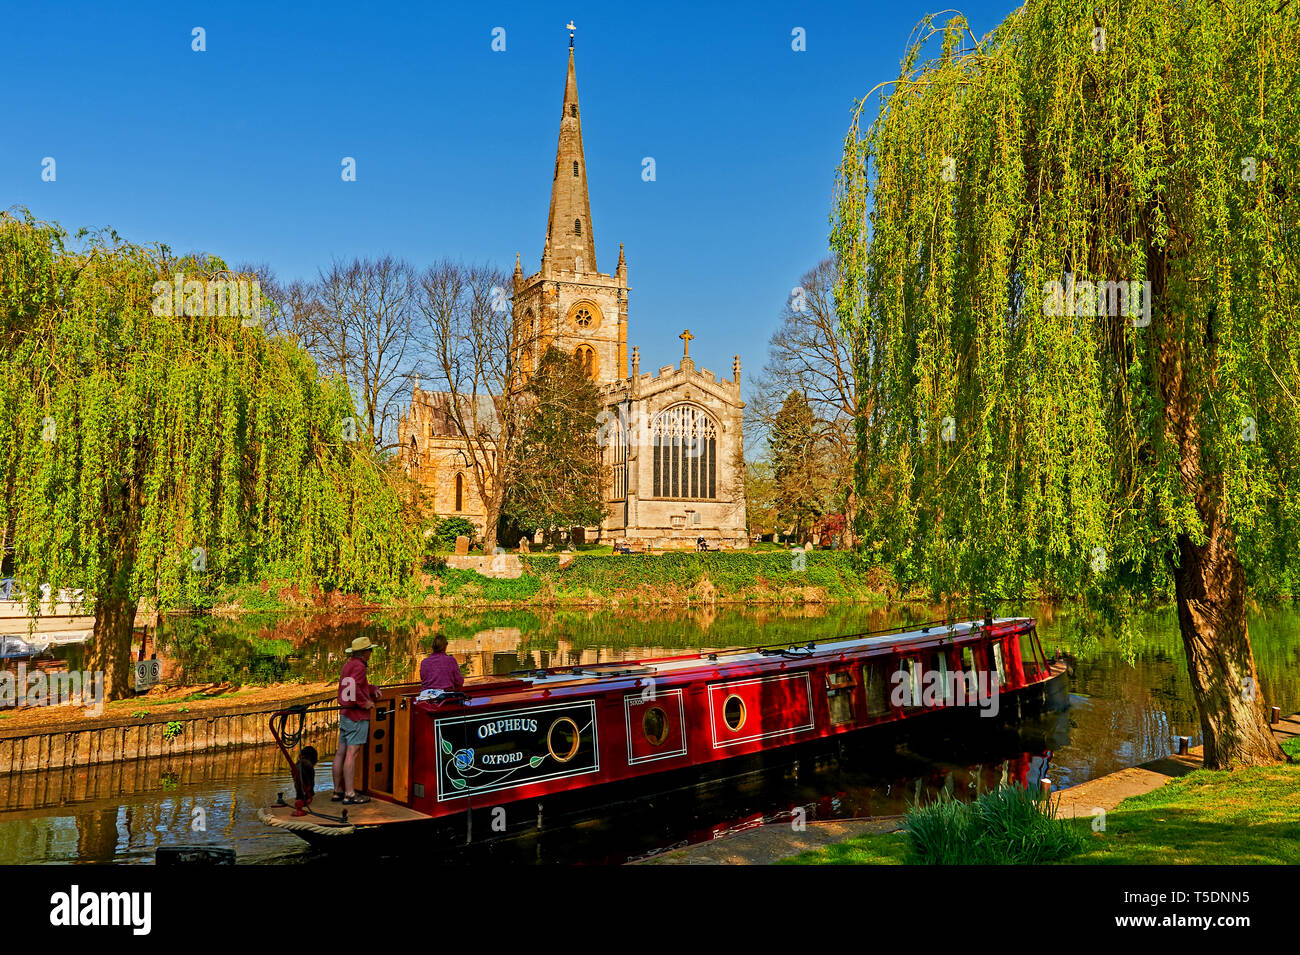 L'église Holy Trinity de Stratford-upon-Avon, lieu de sépulture de la dramaturge William Shakespeare se situe sur les rives de la rivière Avon, dans le Warwickshire. Banque D'Images